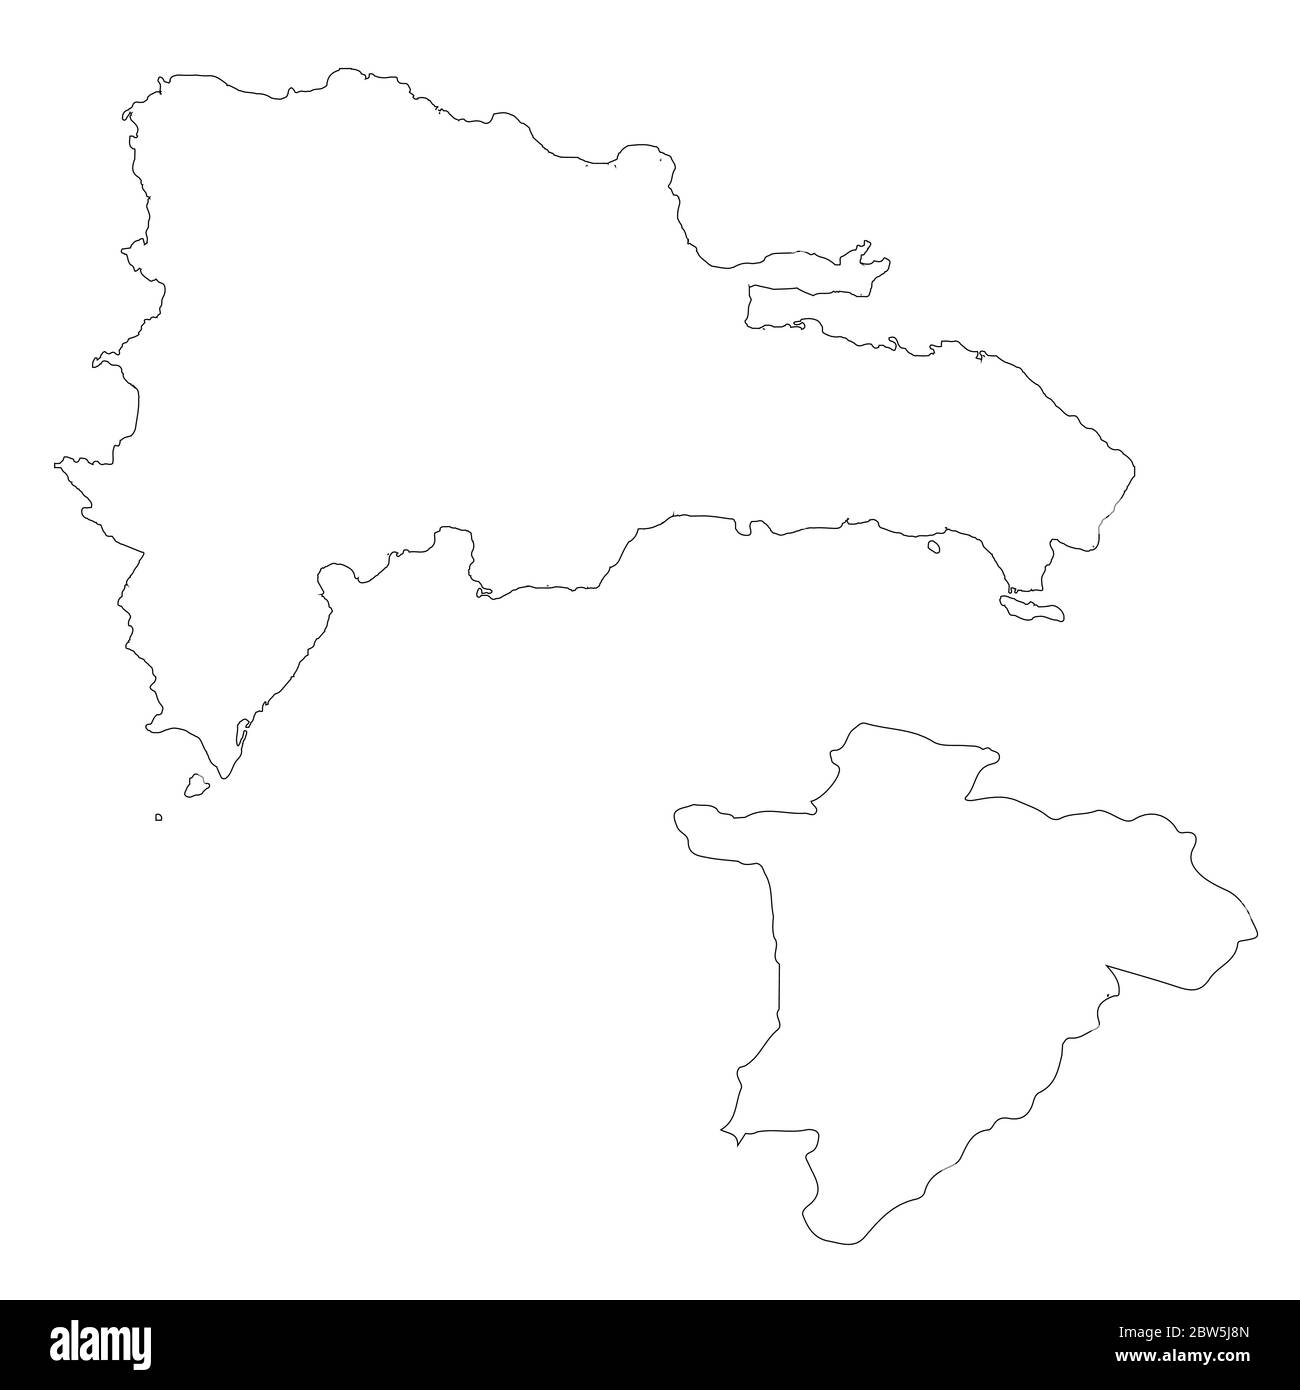 Vektorkarte Dominikanische Republik und Santo Domingo. Land und Hauptstadt. Isolierte Vektorgrafik. Übersicht. EPS 10-Abbildung. Stock Vektor